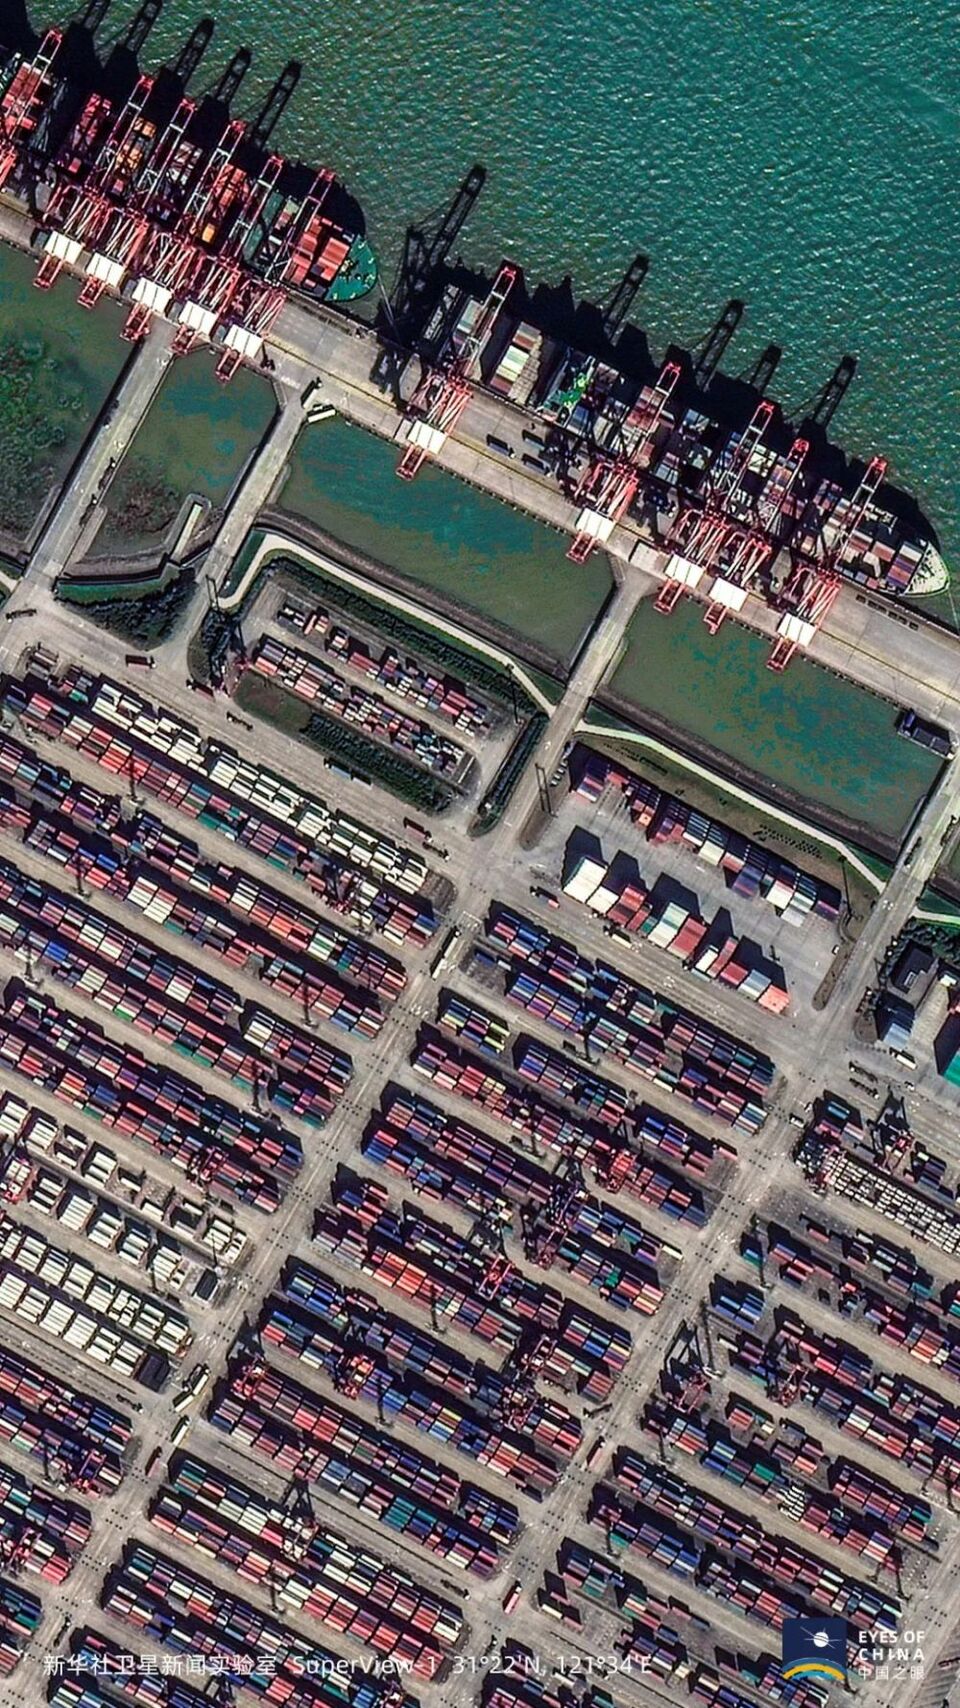 12张卫星图片 回顾2020年不平凡的中国